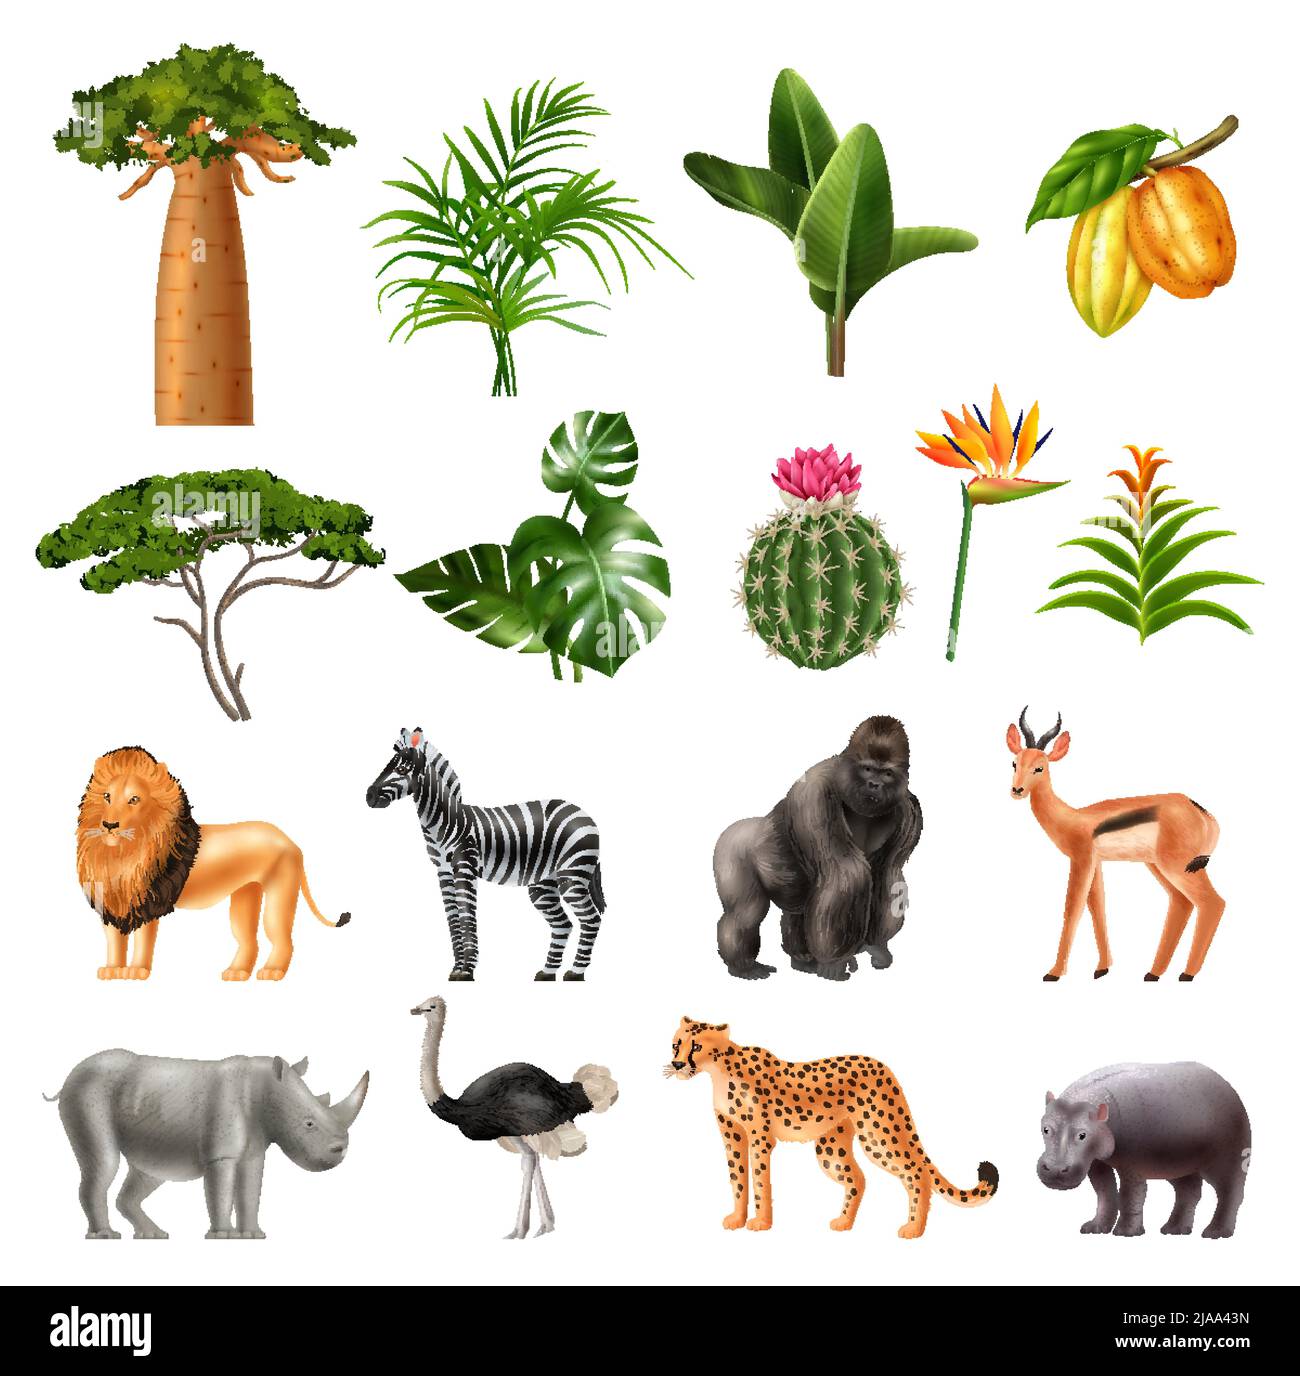 Realista áfrica Conjunto de iconos aislados con plantas tropicales frutas e imágenes de animales exóticos silvestres ilustración vectorial Ilustración del Vector